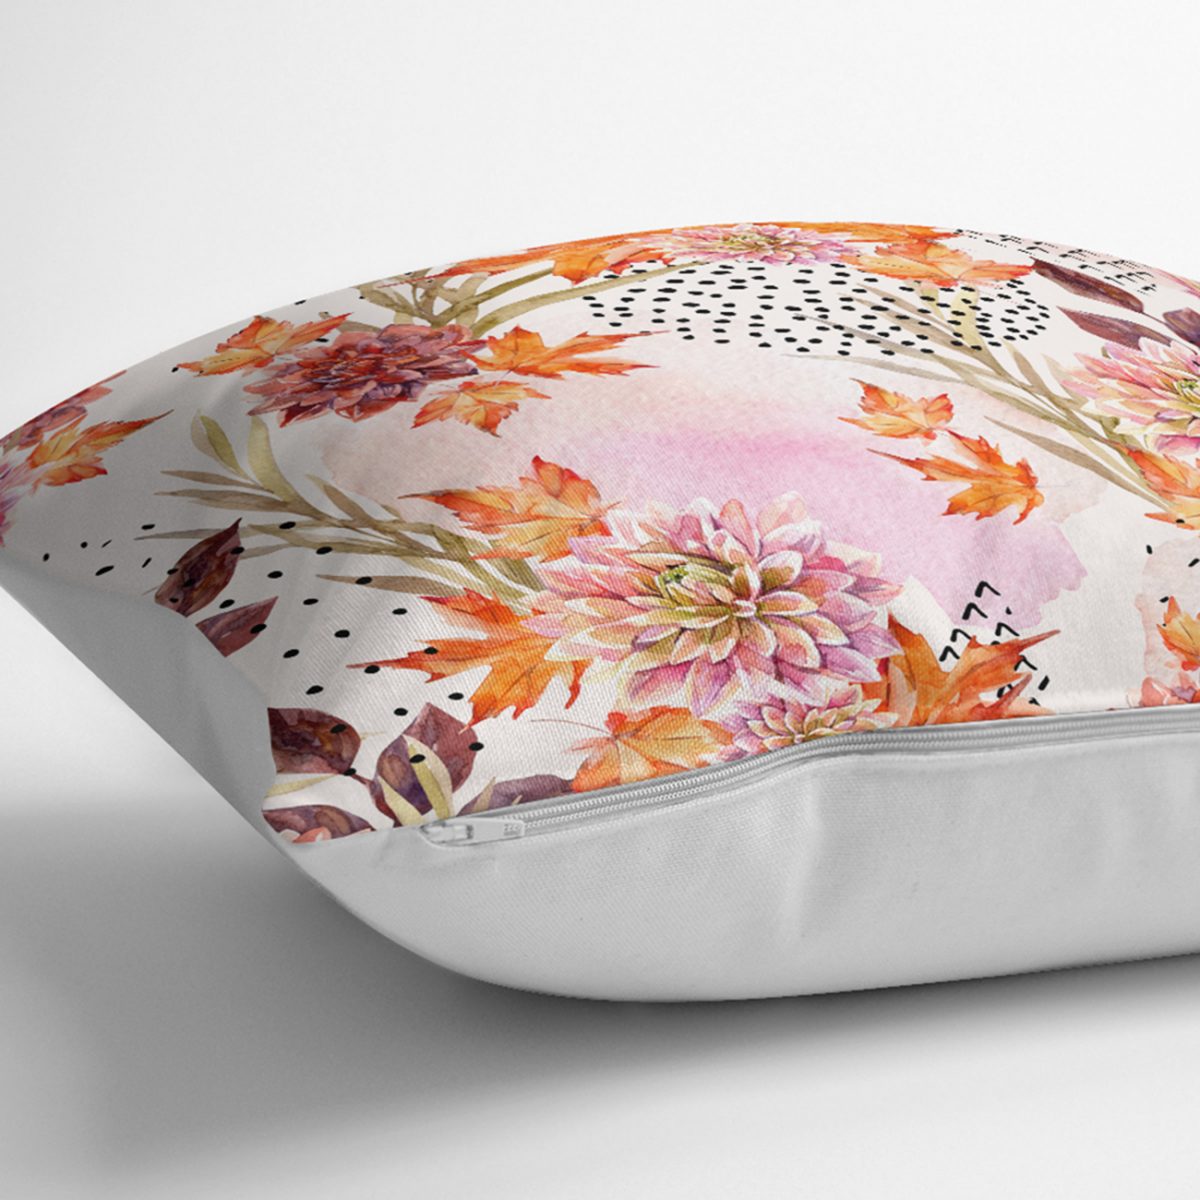 Sonbahar Temalı Pembe Çiçek Desenli Özel Tasarım Modern Yastık Kılıfı Realhomes